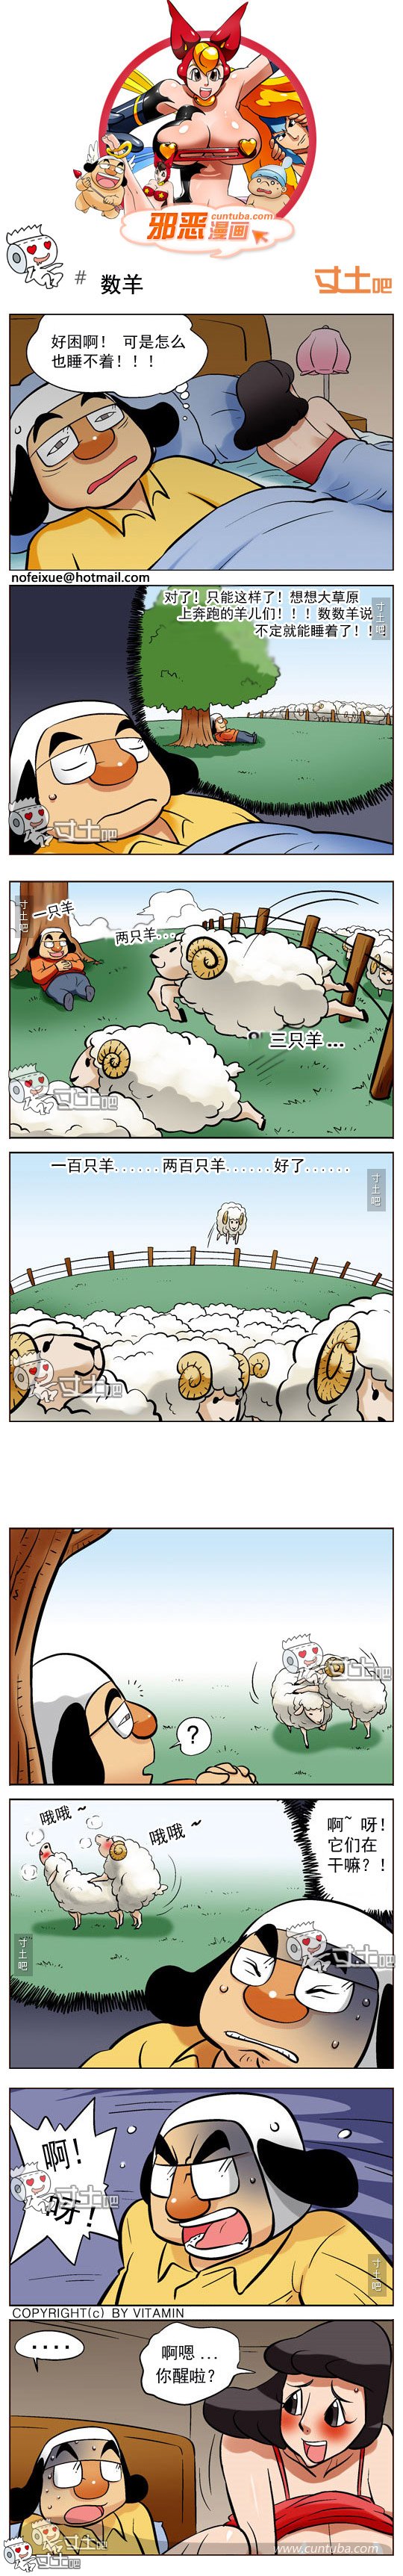 邪恶漫画数羊